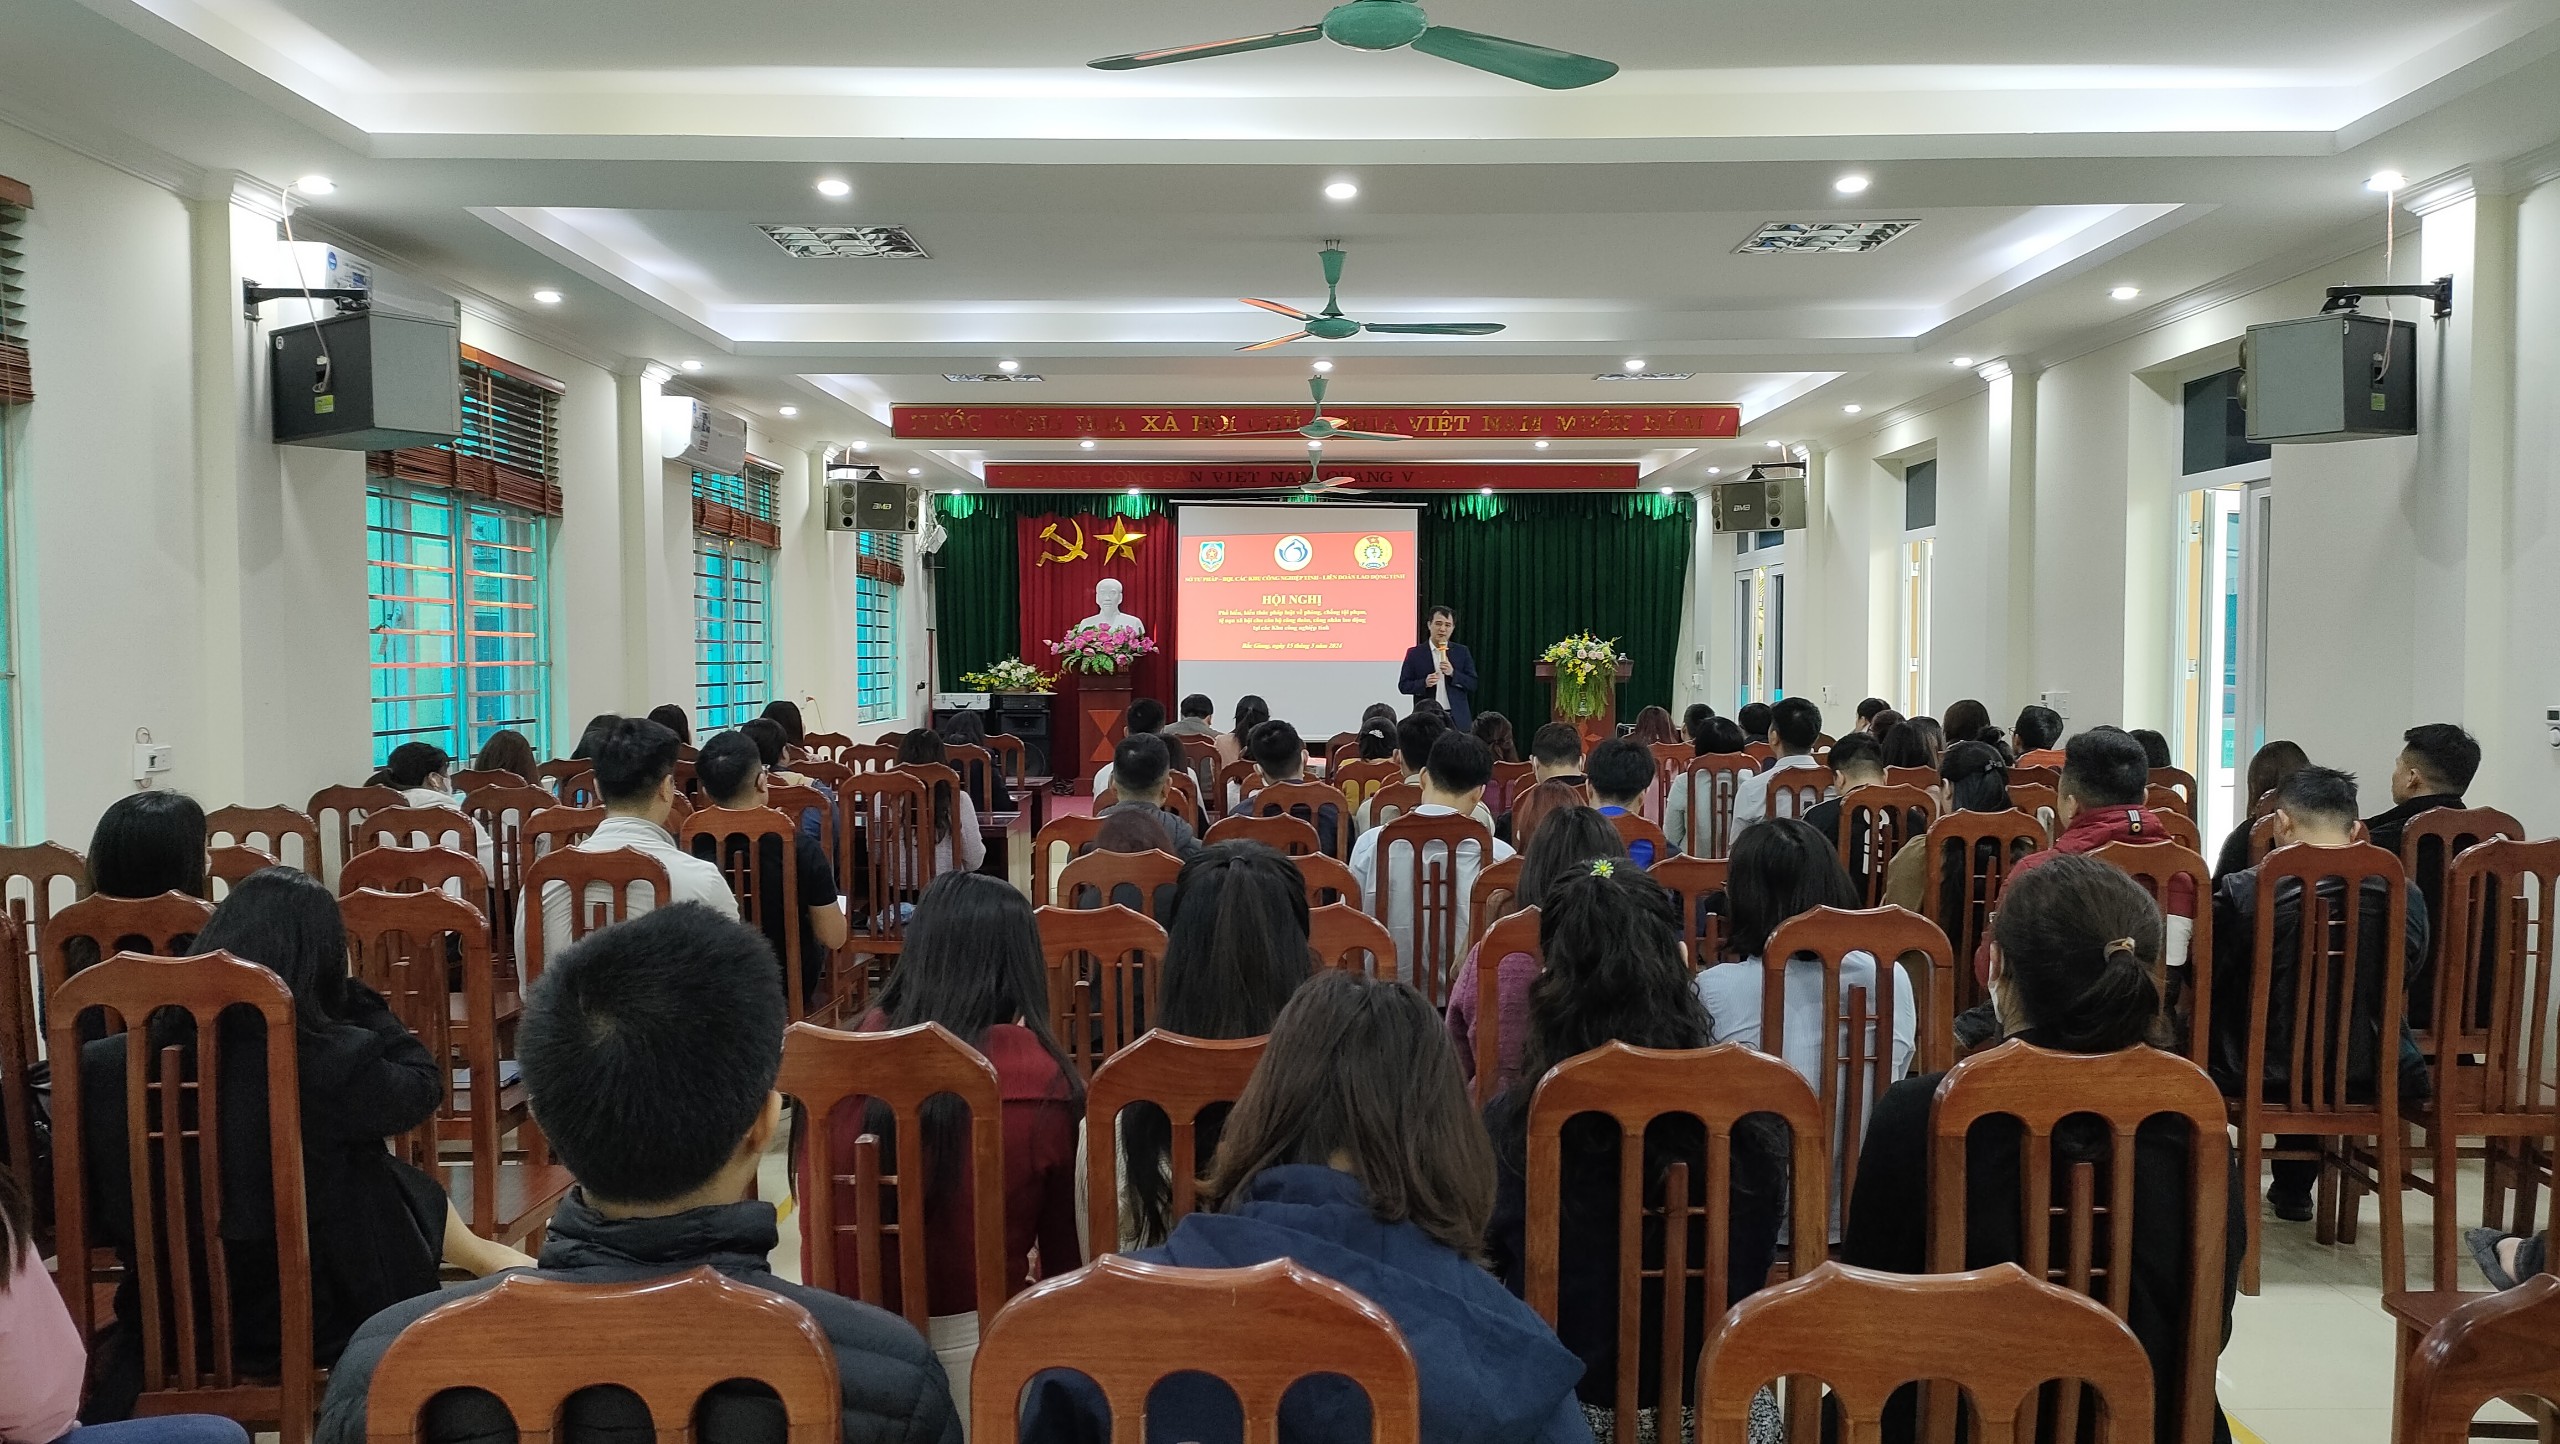 Hội nghị tuyên truyền, phổ biến về phòng, chống tội phạm, tệ nạn xã hội tại các Khu công nghiệp trên địa bàn tỉnh Bắc Giang|https://bqlkcn.bacgiang.gov.vn/en_US/chi-tiet-tin-tuc/-/asset_publisher/xme8LCPEx4VA/content/hoi-nghi-tuyen-truyen-pho-bien-ve-phong-chong-toi-pham-te-nan-xa-hoi-tai-cac-khu-cong-nghiep-tren-ia-ban-tinh-bac-giang